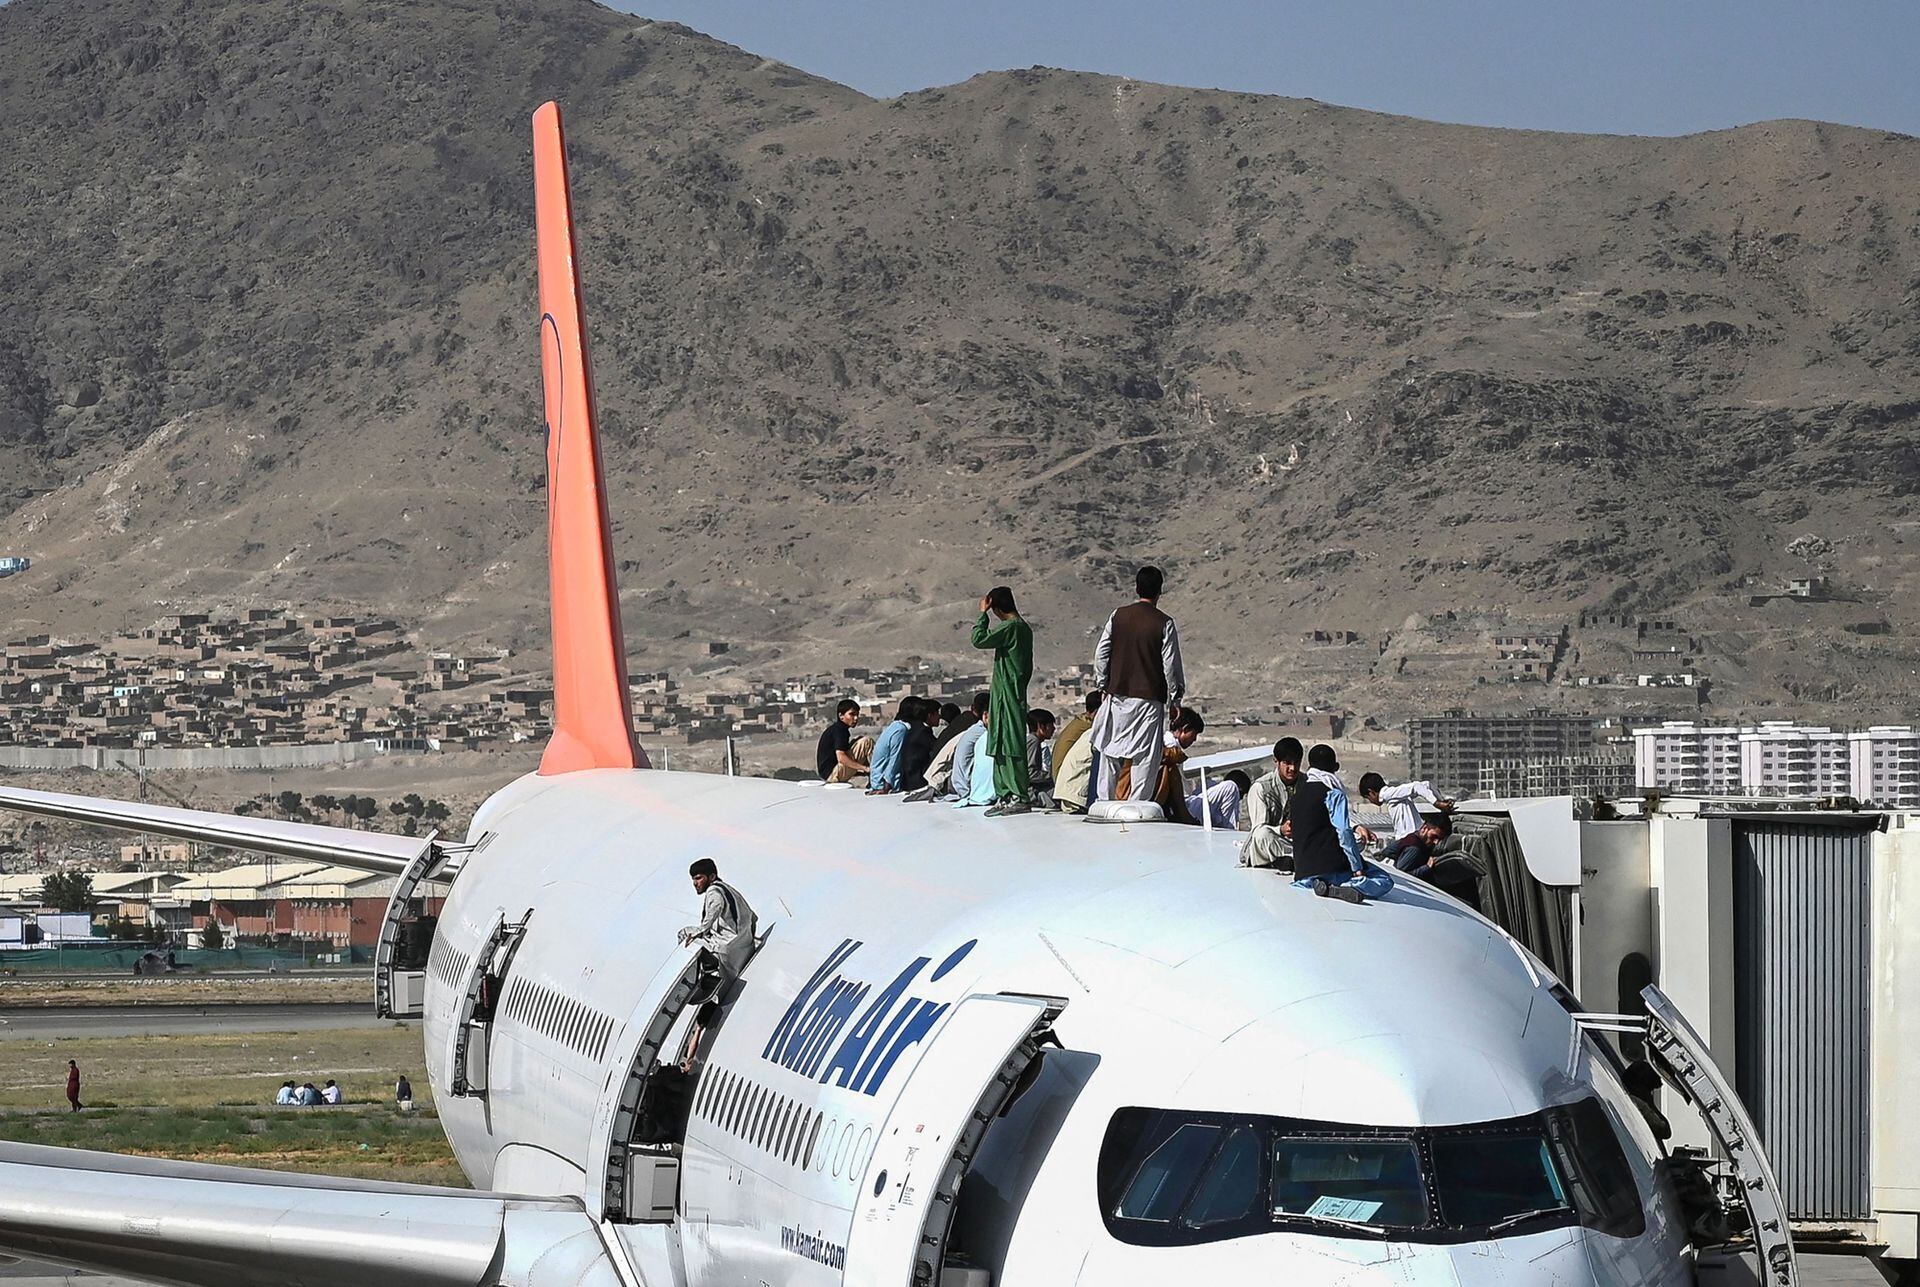 La imagen que recorrió el mundo: afganos subidos al techo y a las alas de un avión que estaba a punto de despegar del aeropuerto de Kabul, en un desesperado intento de huir de los talibanes